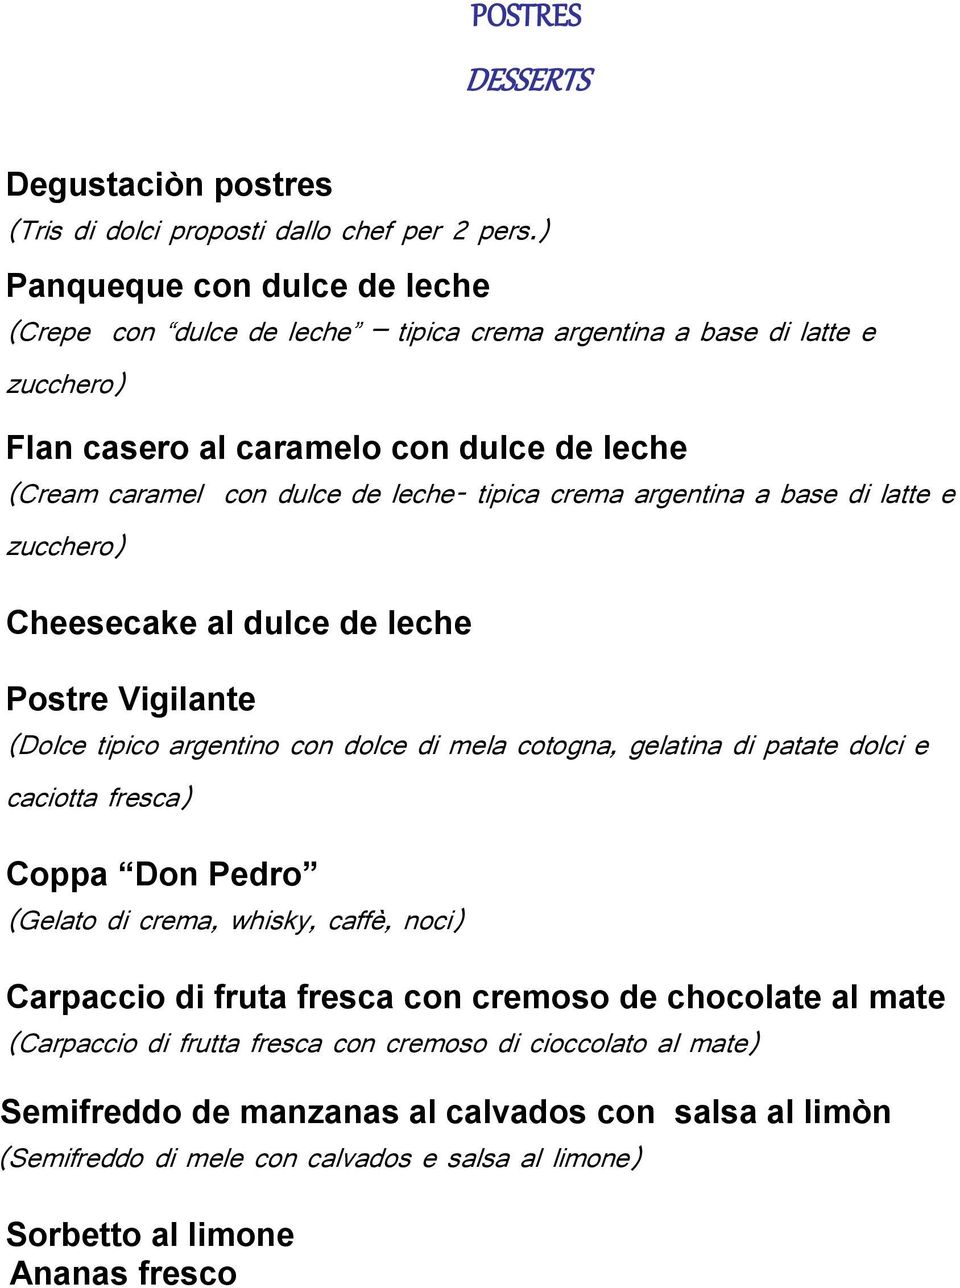 crema argentina a base di latte e zucchero) Cheesecake al dulce de leche Postre Vigilante (Dolce tipico argentino con dolce di mela cotogna, gelatina di patate dolci e caciotta fresca) Coppa